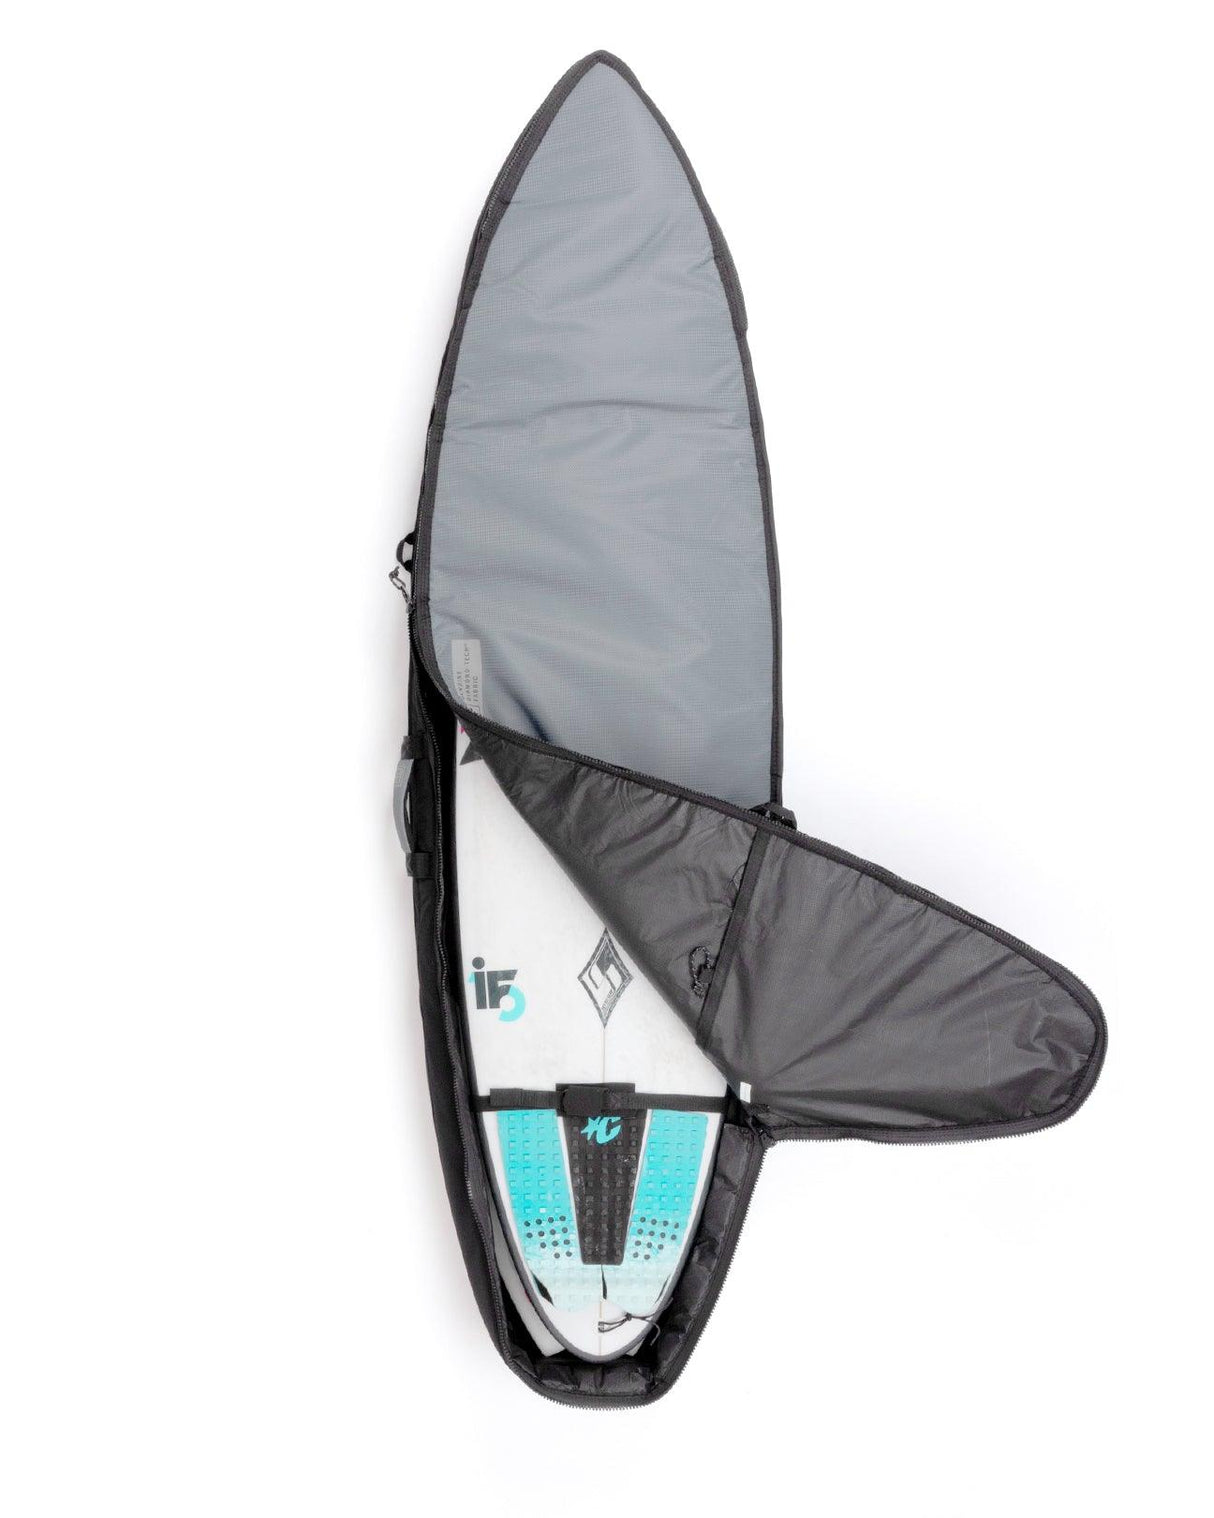 Shortboard Double Dt2.0 - Beachin Surf